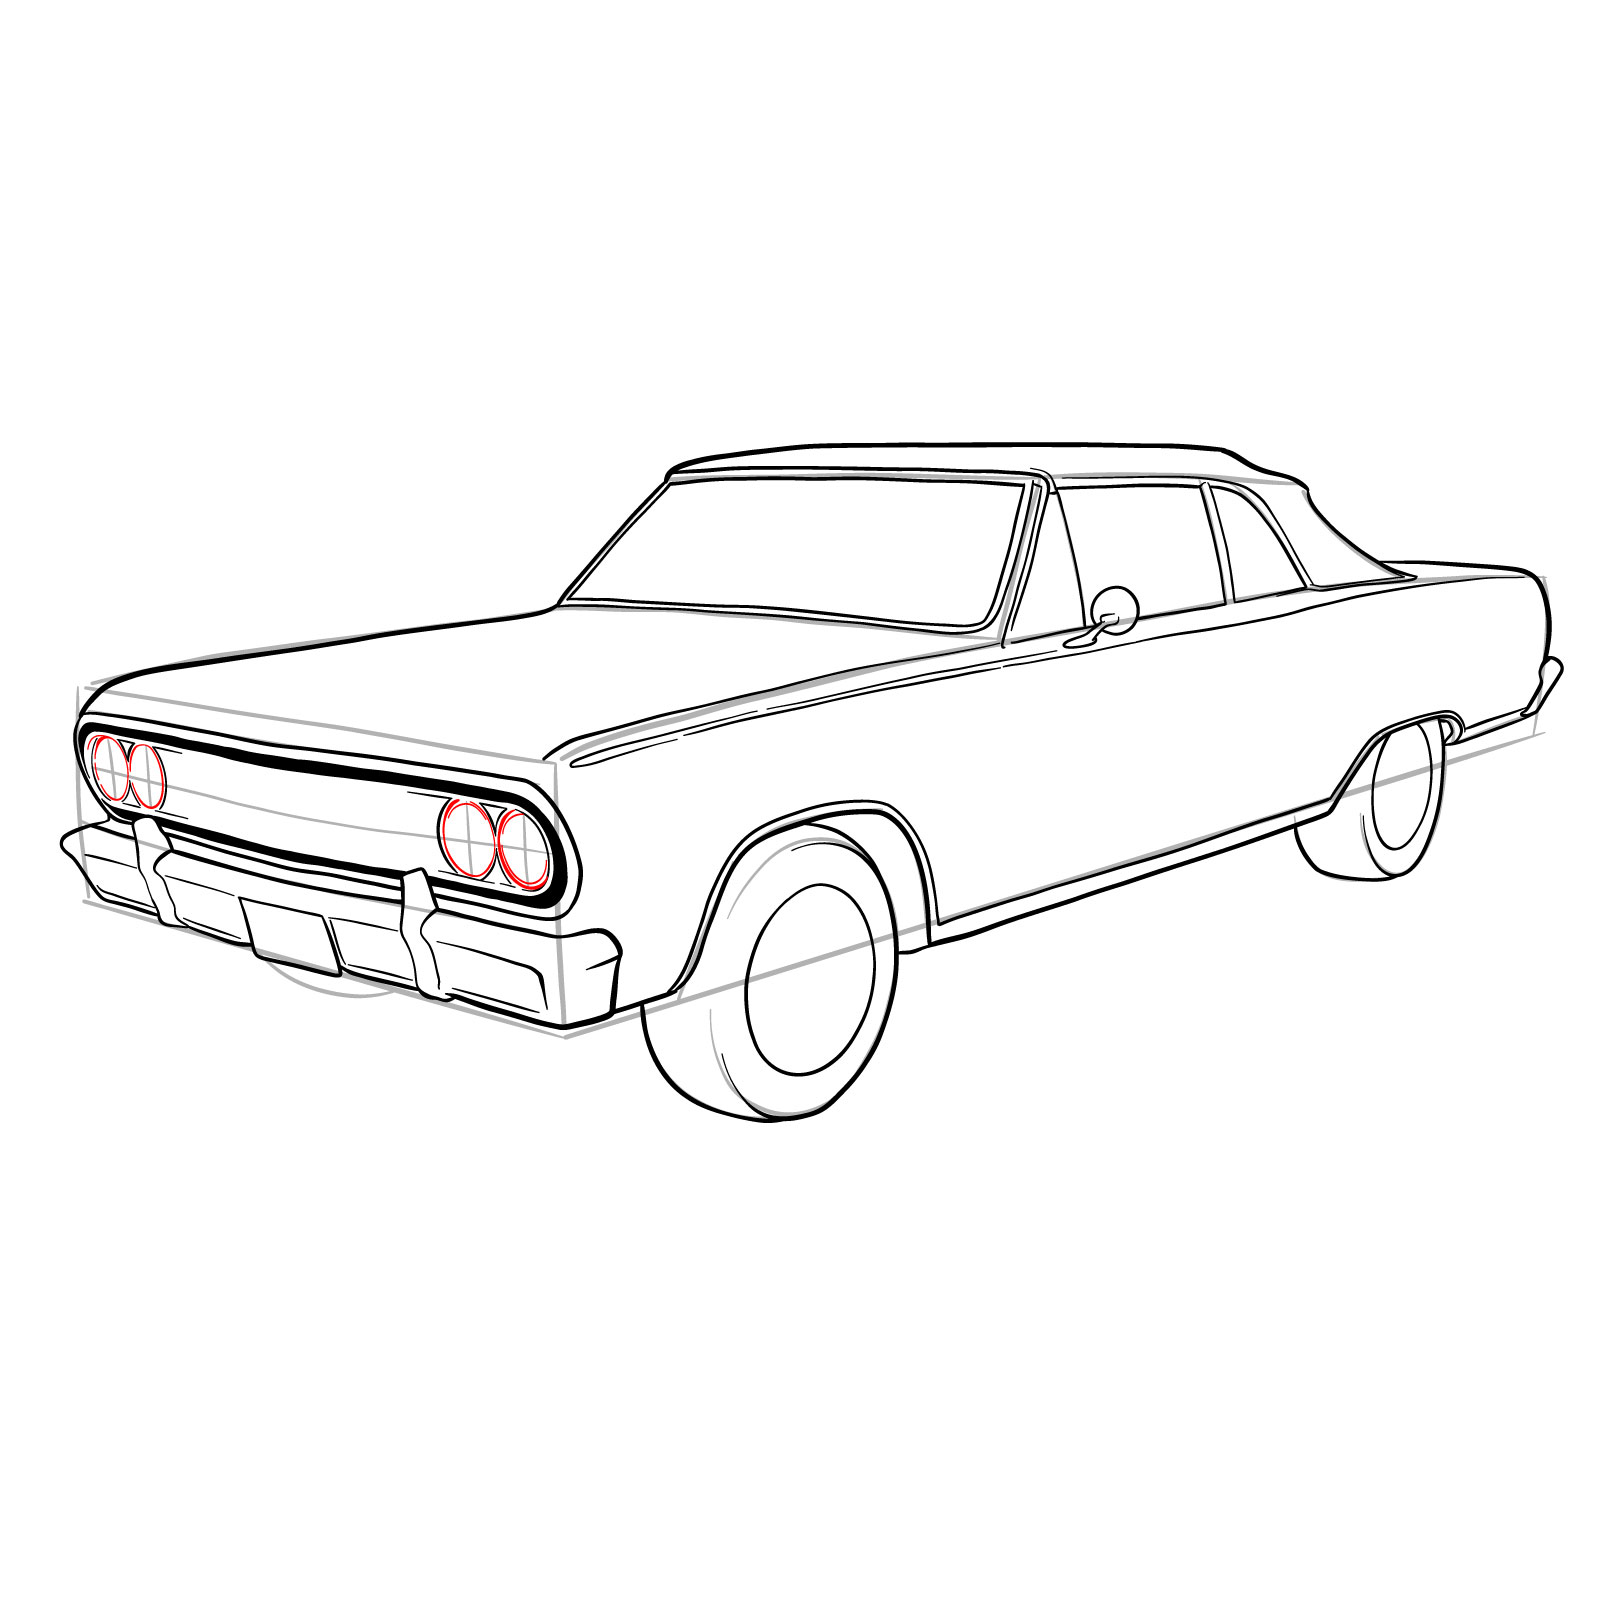 How to draw 1964 Chevrolet Malibu - step 31